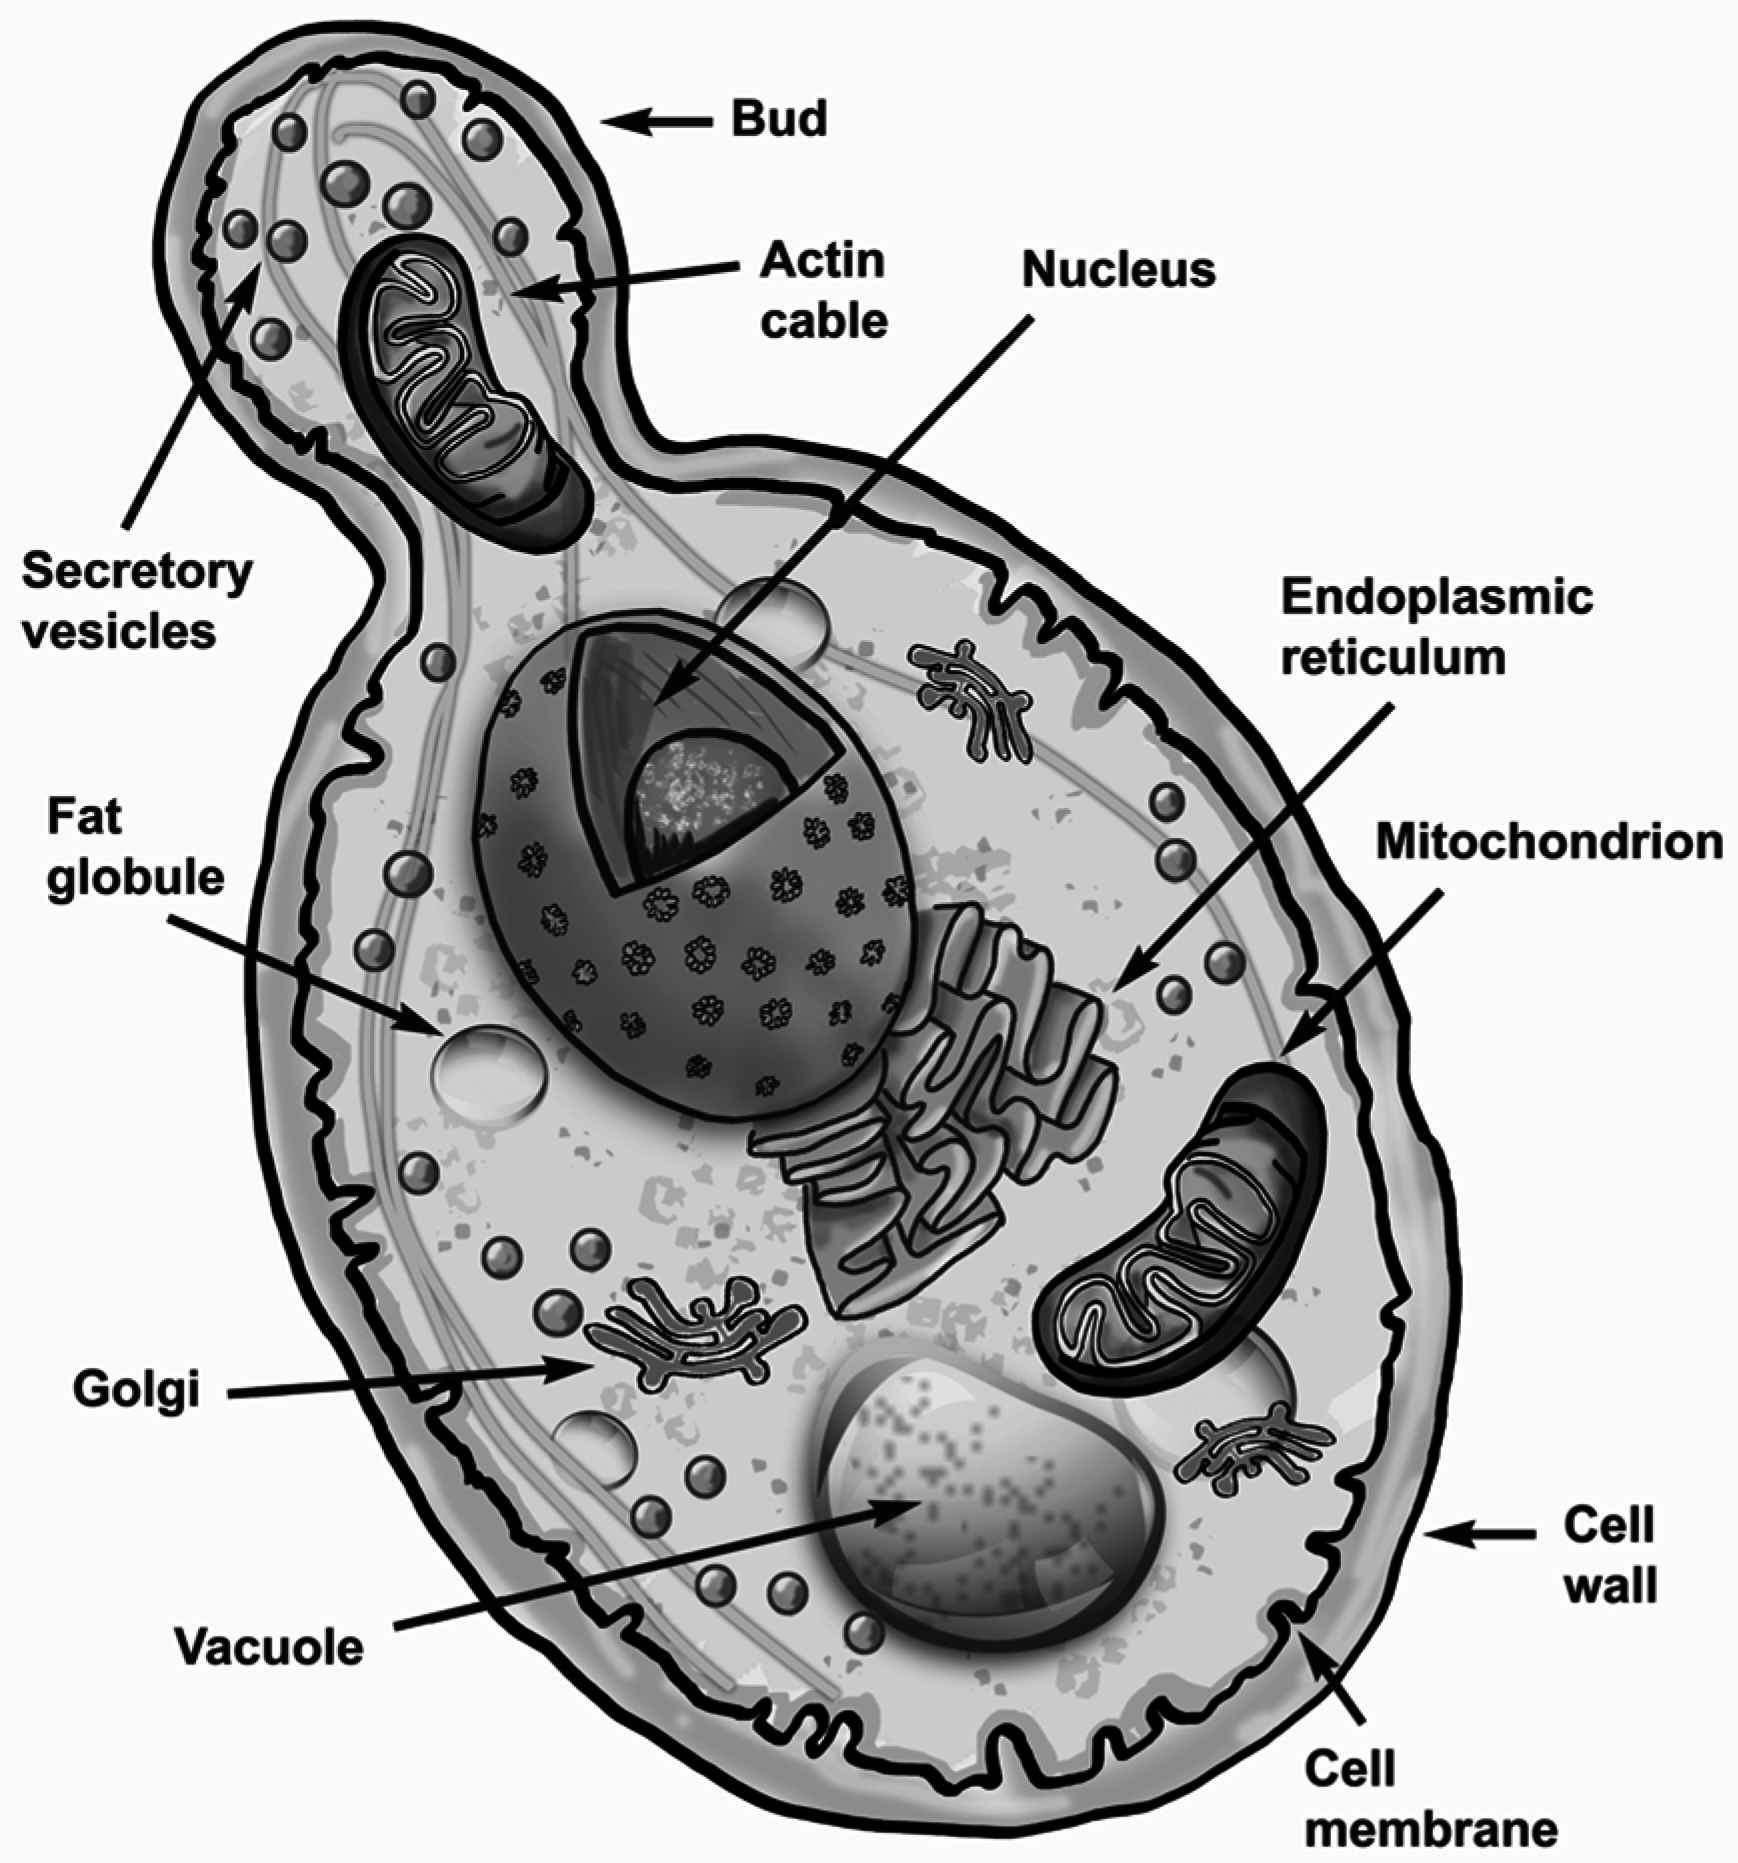 клетка гриба фото